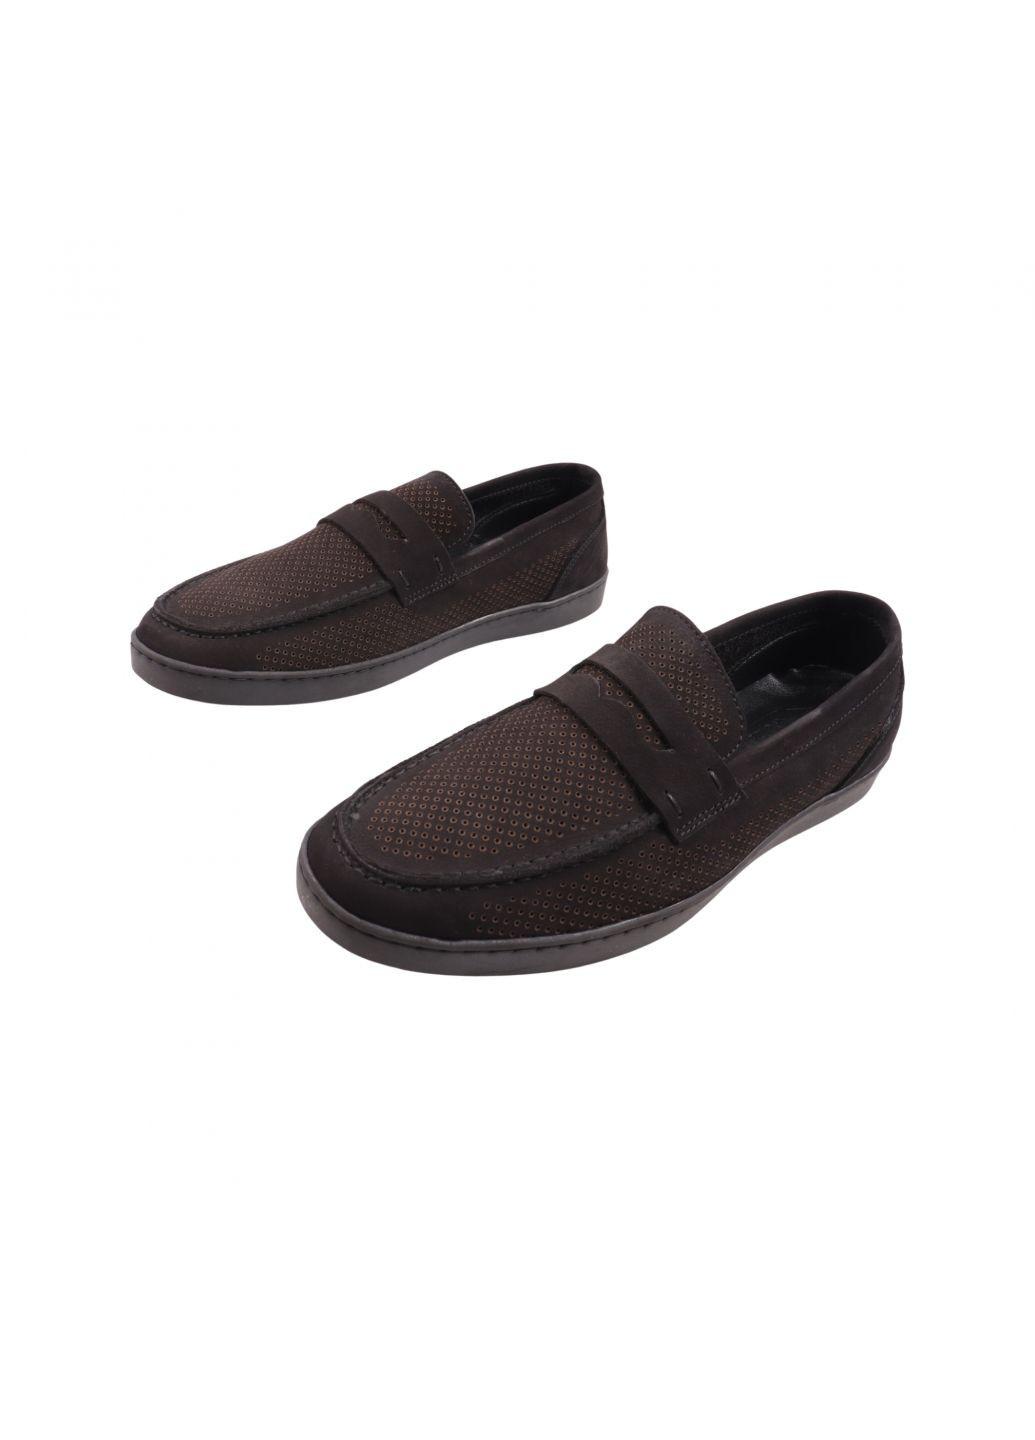 Черные туфли мужские черные натуральний нубук Copalo